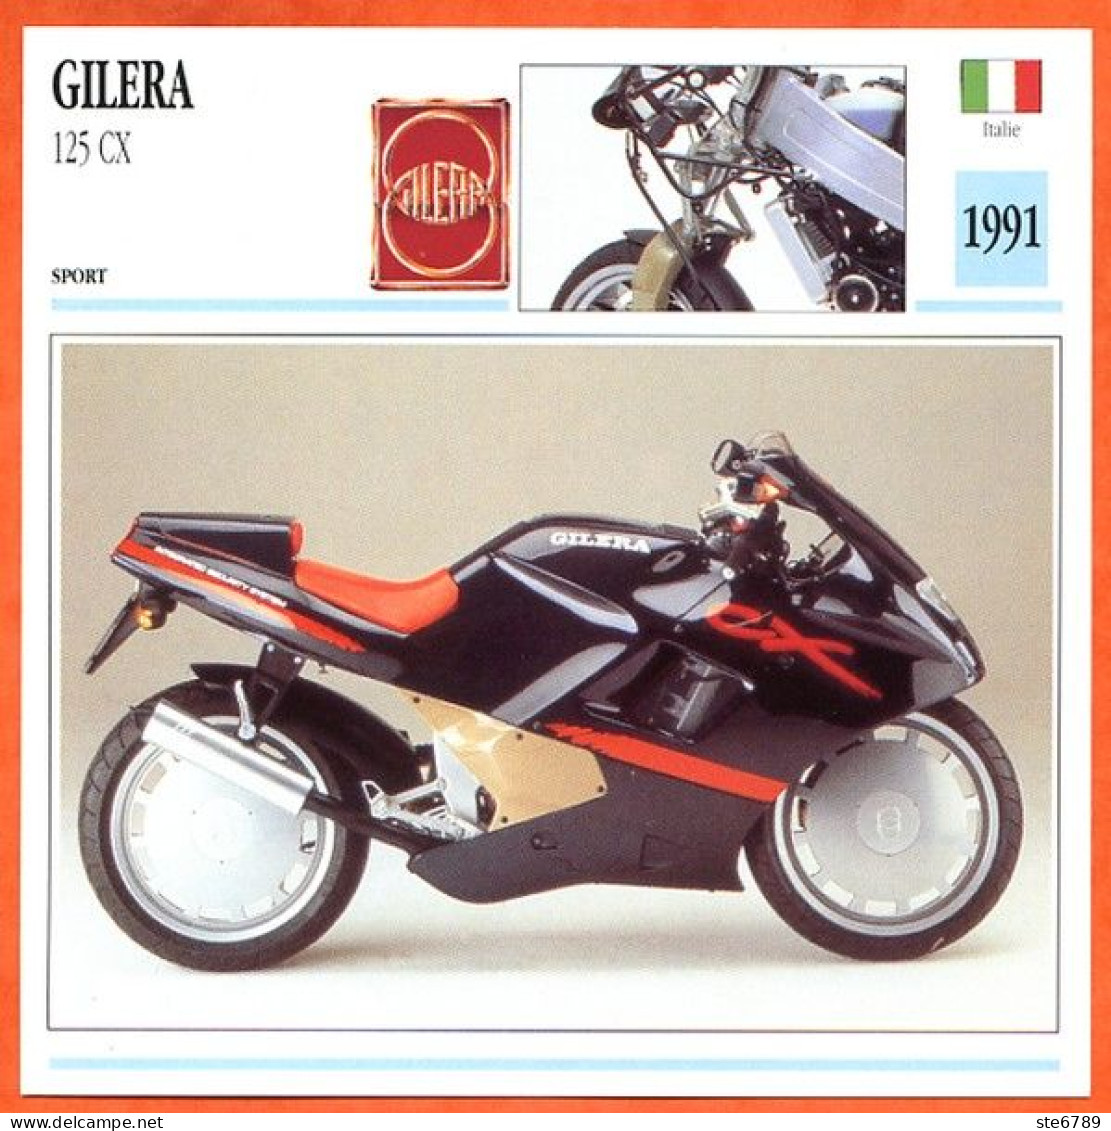 GILERA 125 CX 1991 Italie Fiche Technique Moto - Sport